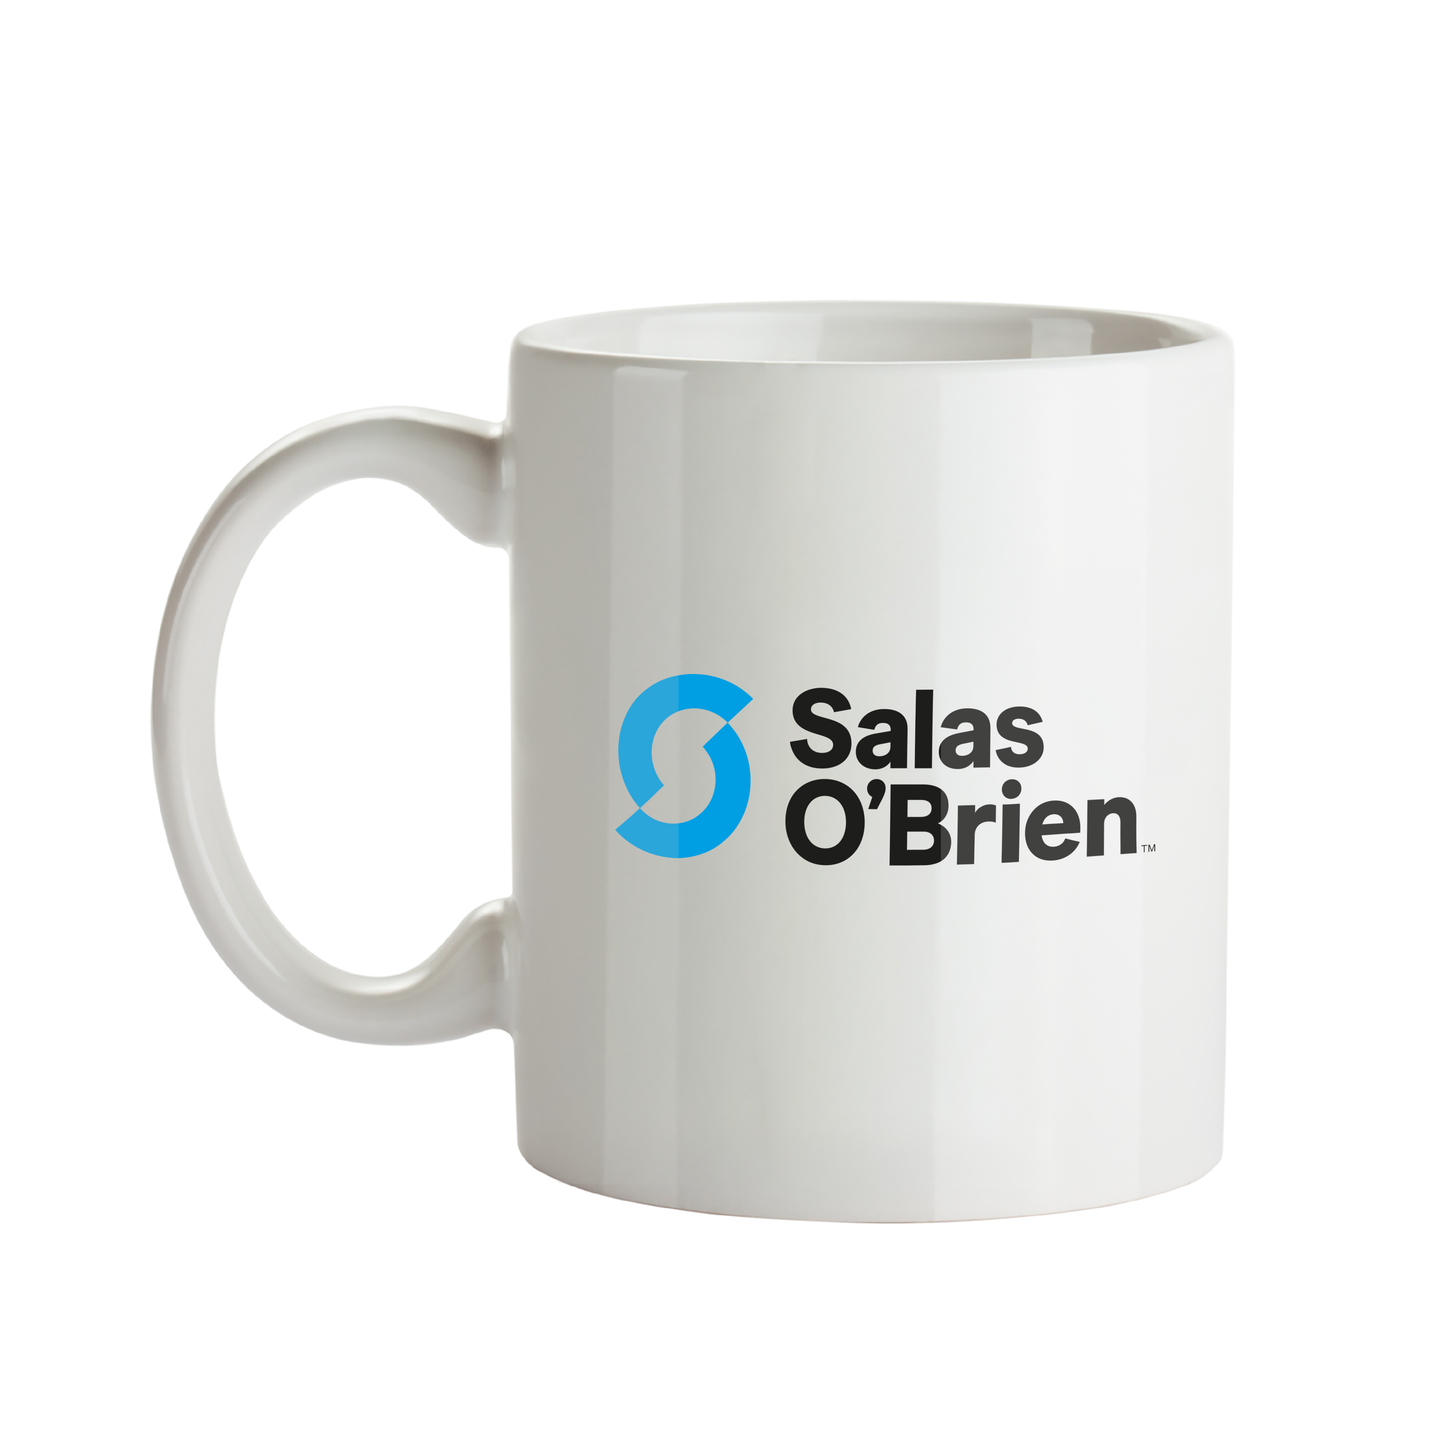 Salas O'Brien Ceramic Mug